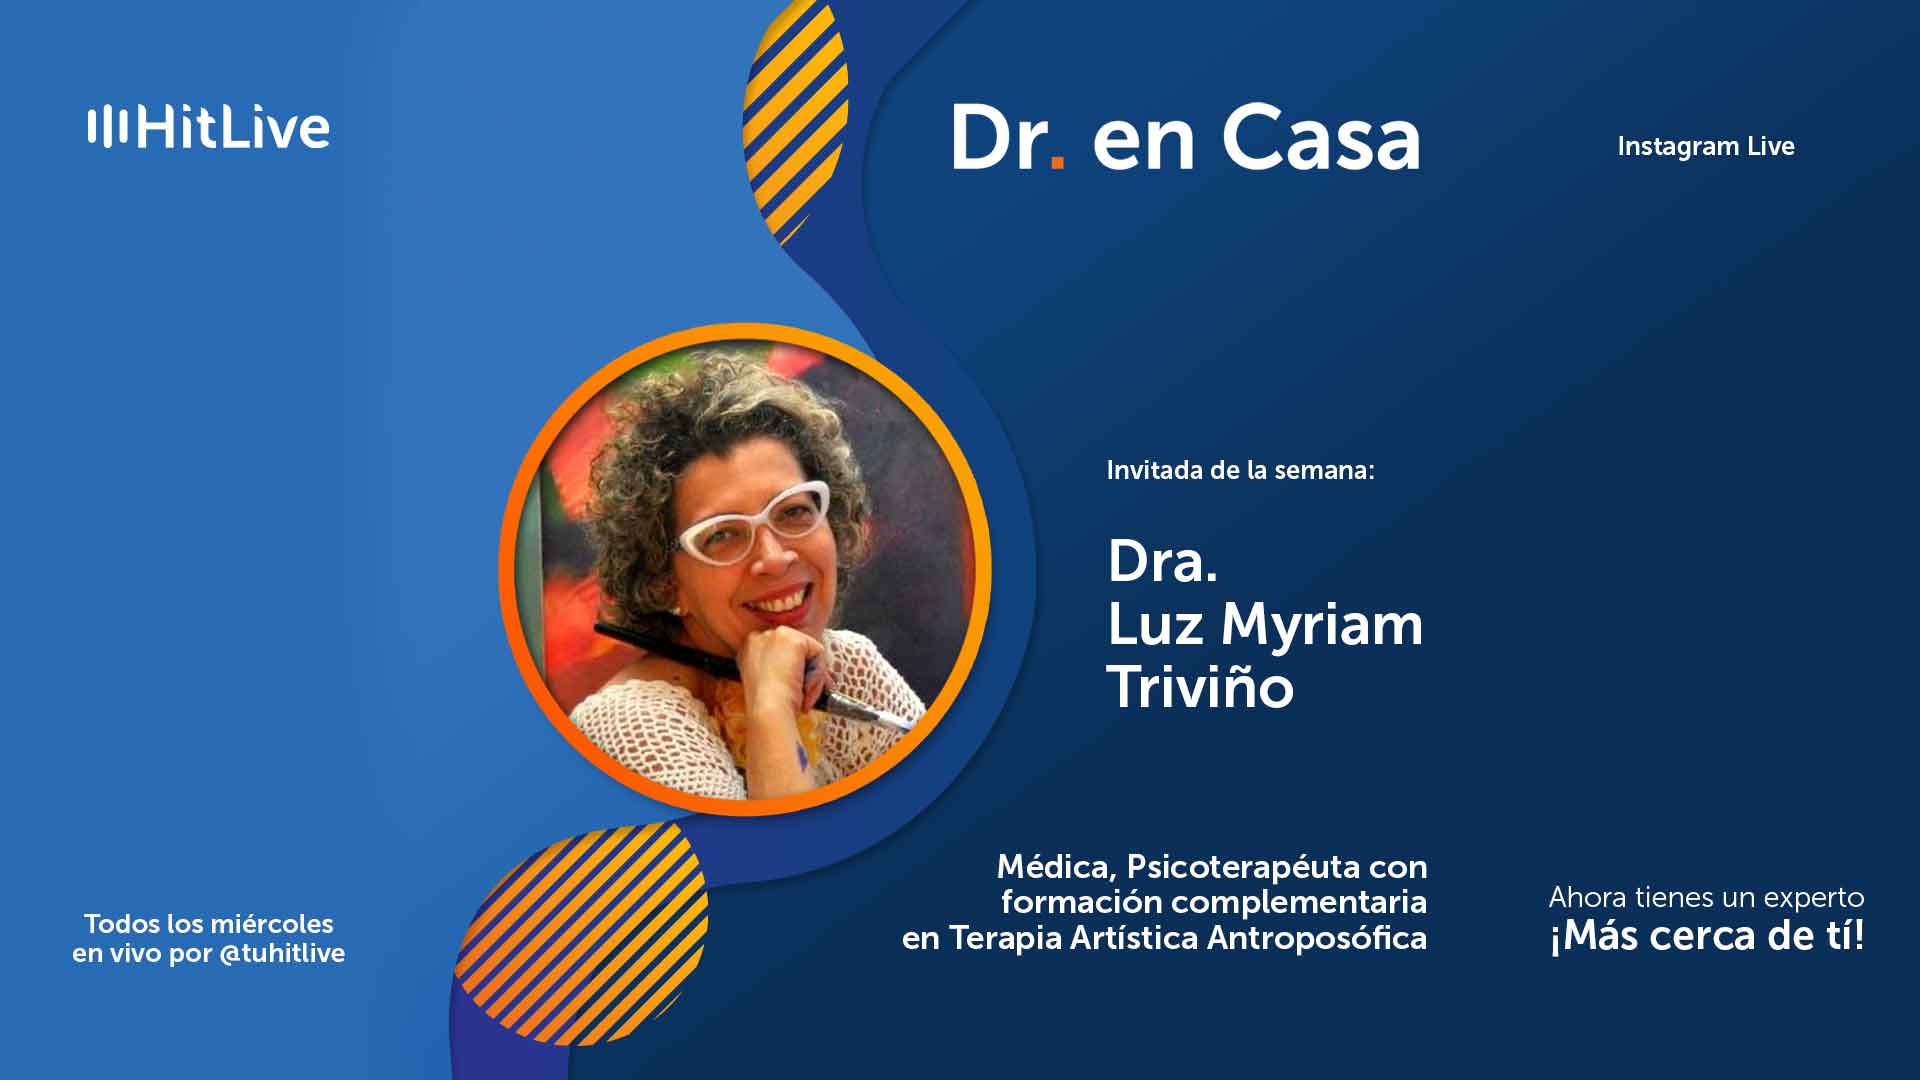 La Dra. Luz Myriam Triviño invita a Dr. en Casa